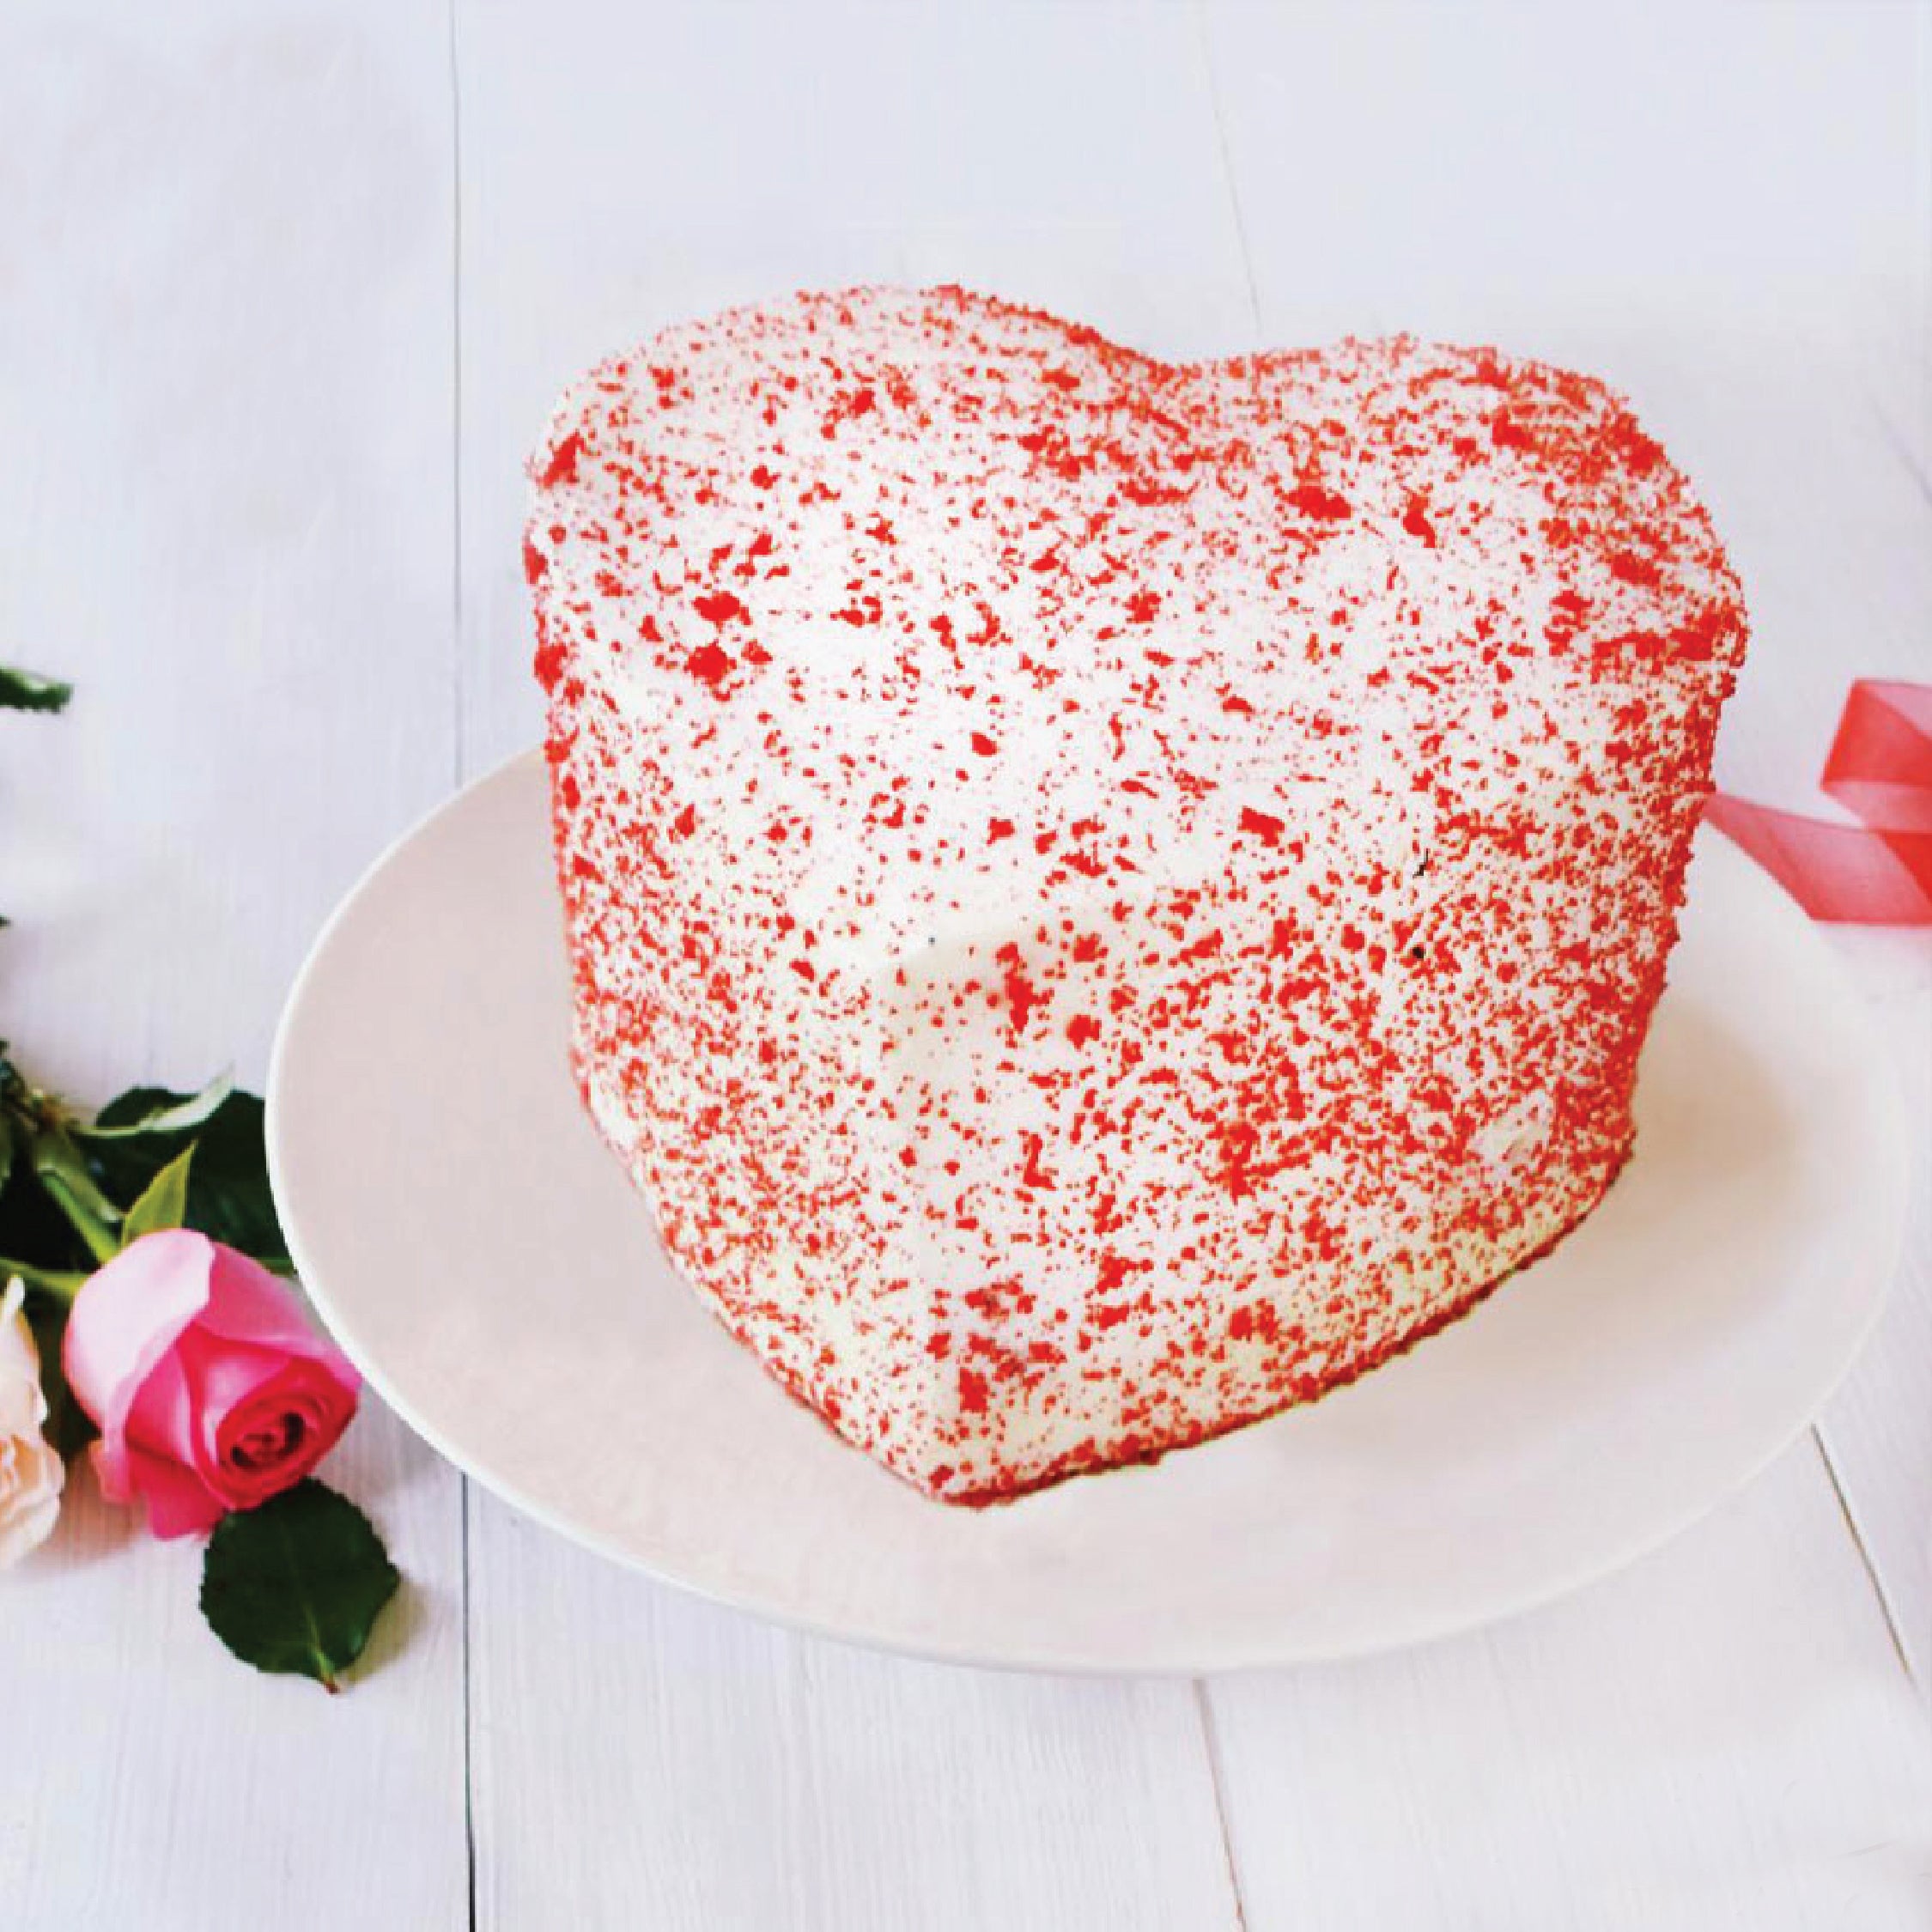 Red Velvet Heart Cake - KHI ONLY